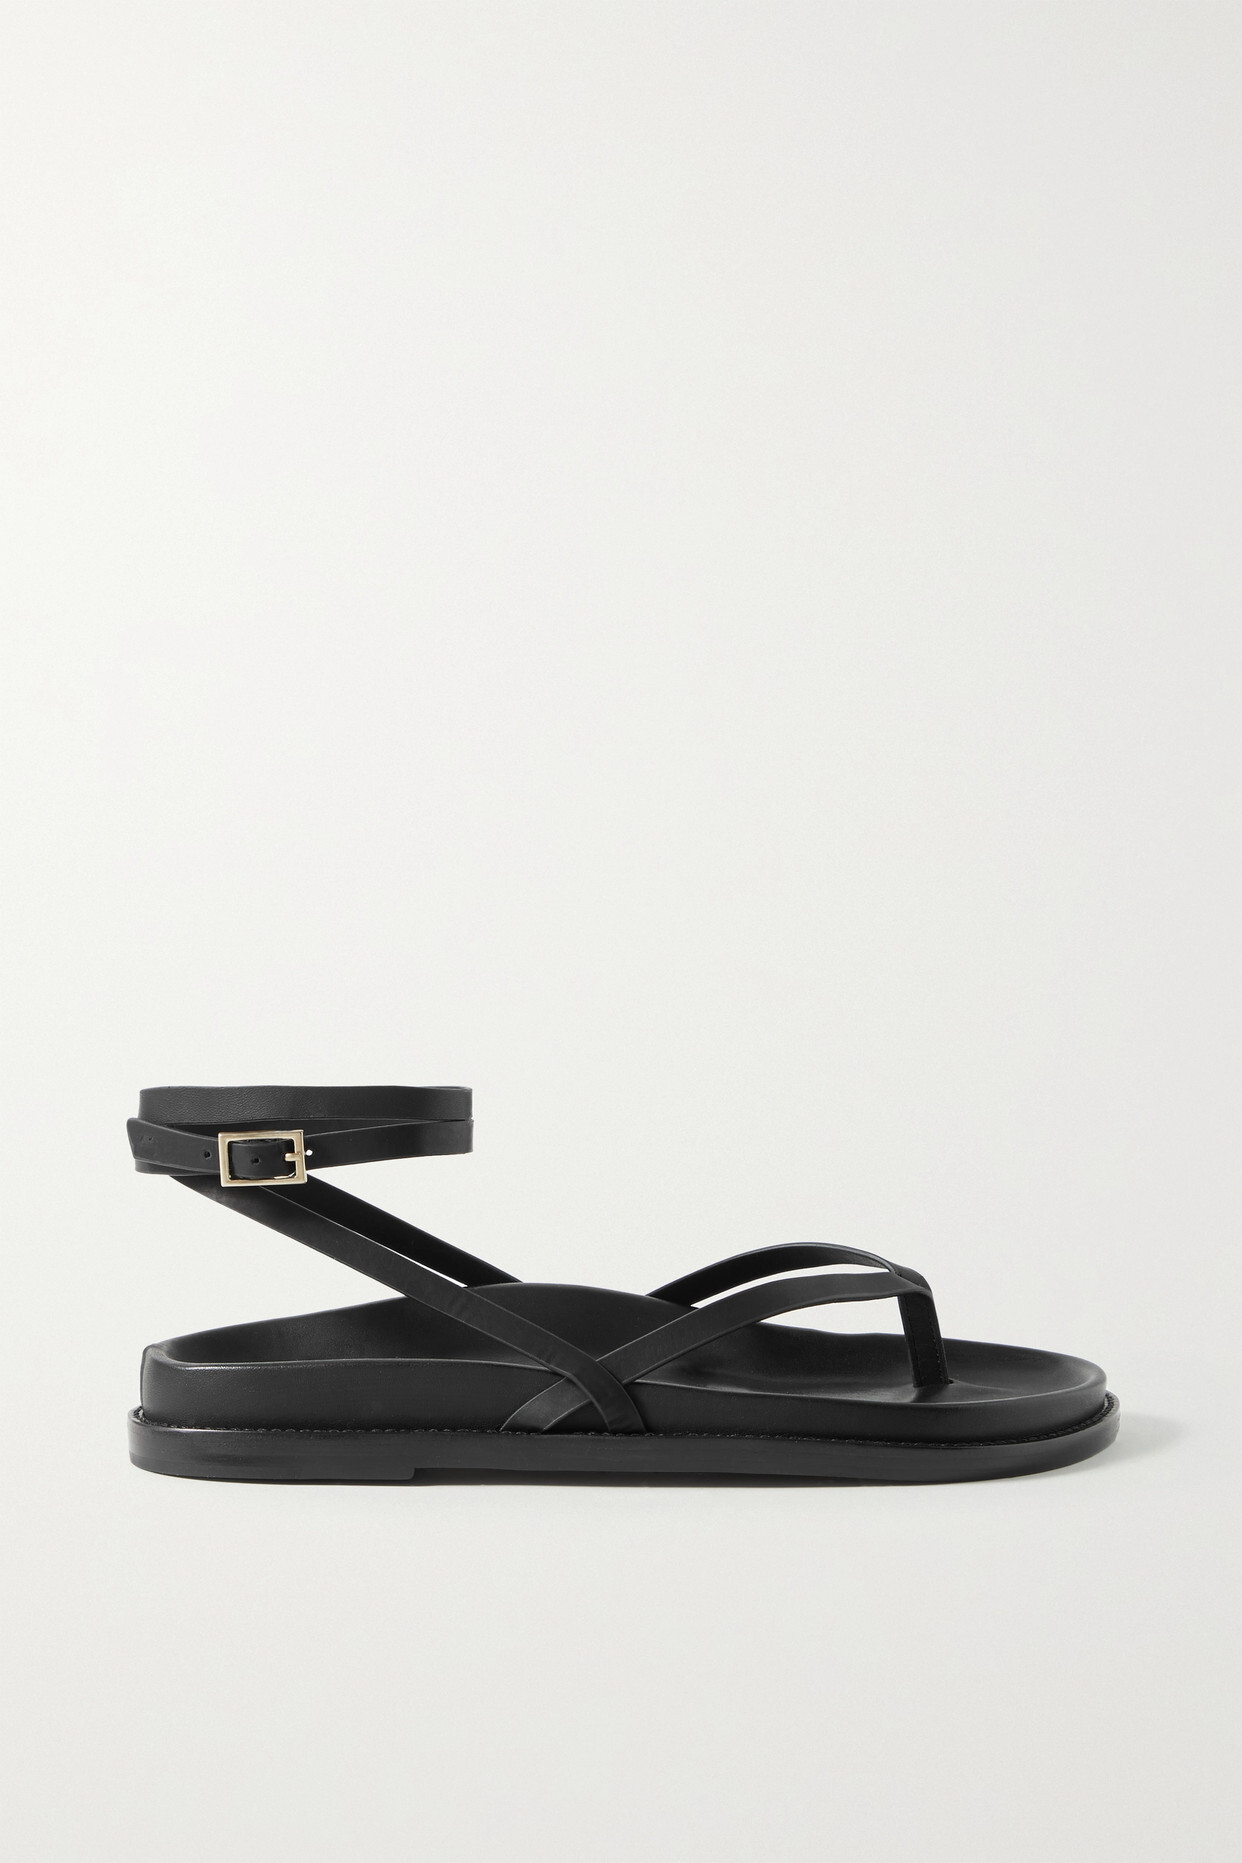 Porte & Paire - Leather Sandals - Black